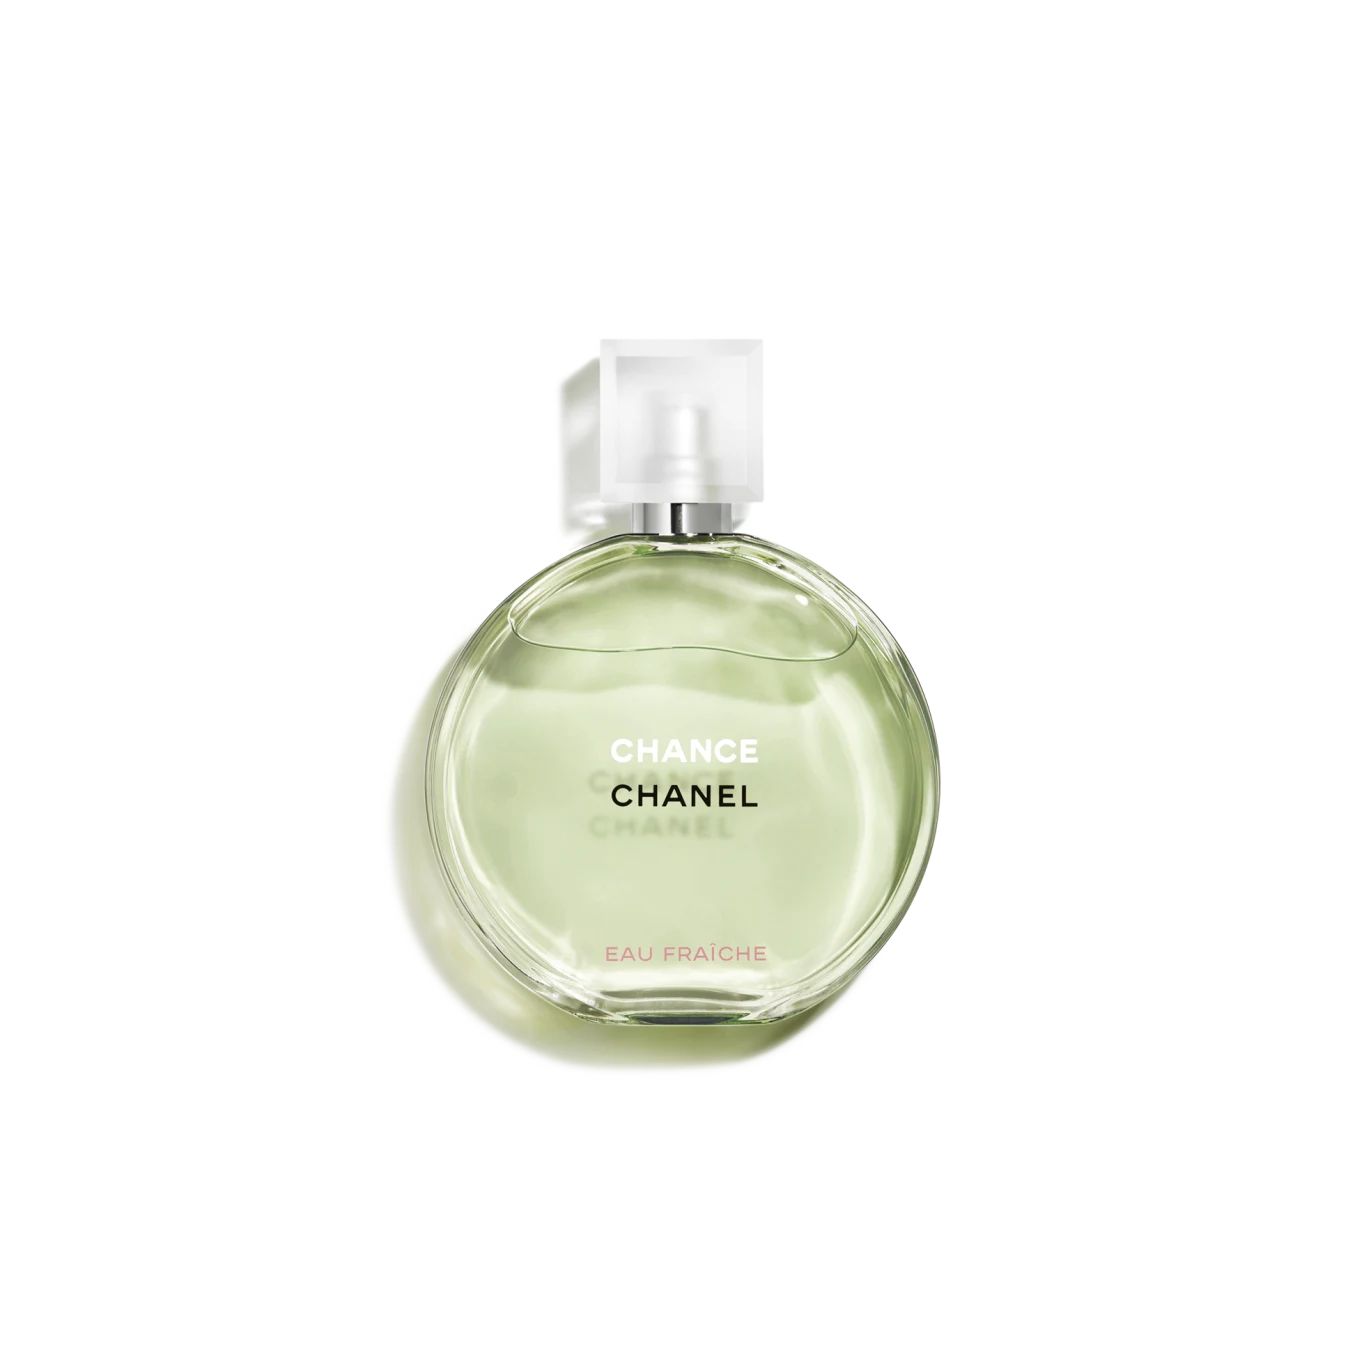 CHANCE EAU FRAÎCHE | Chanel, Inc. (US)